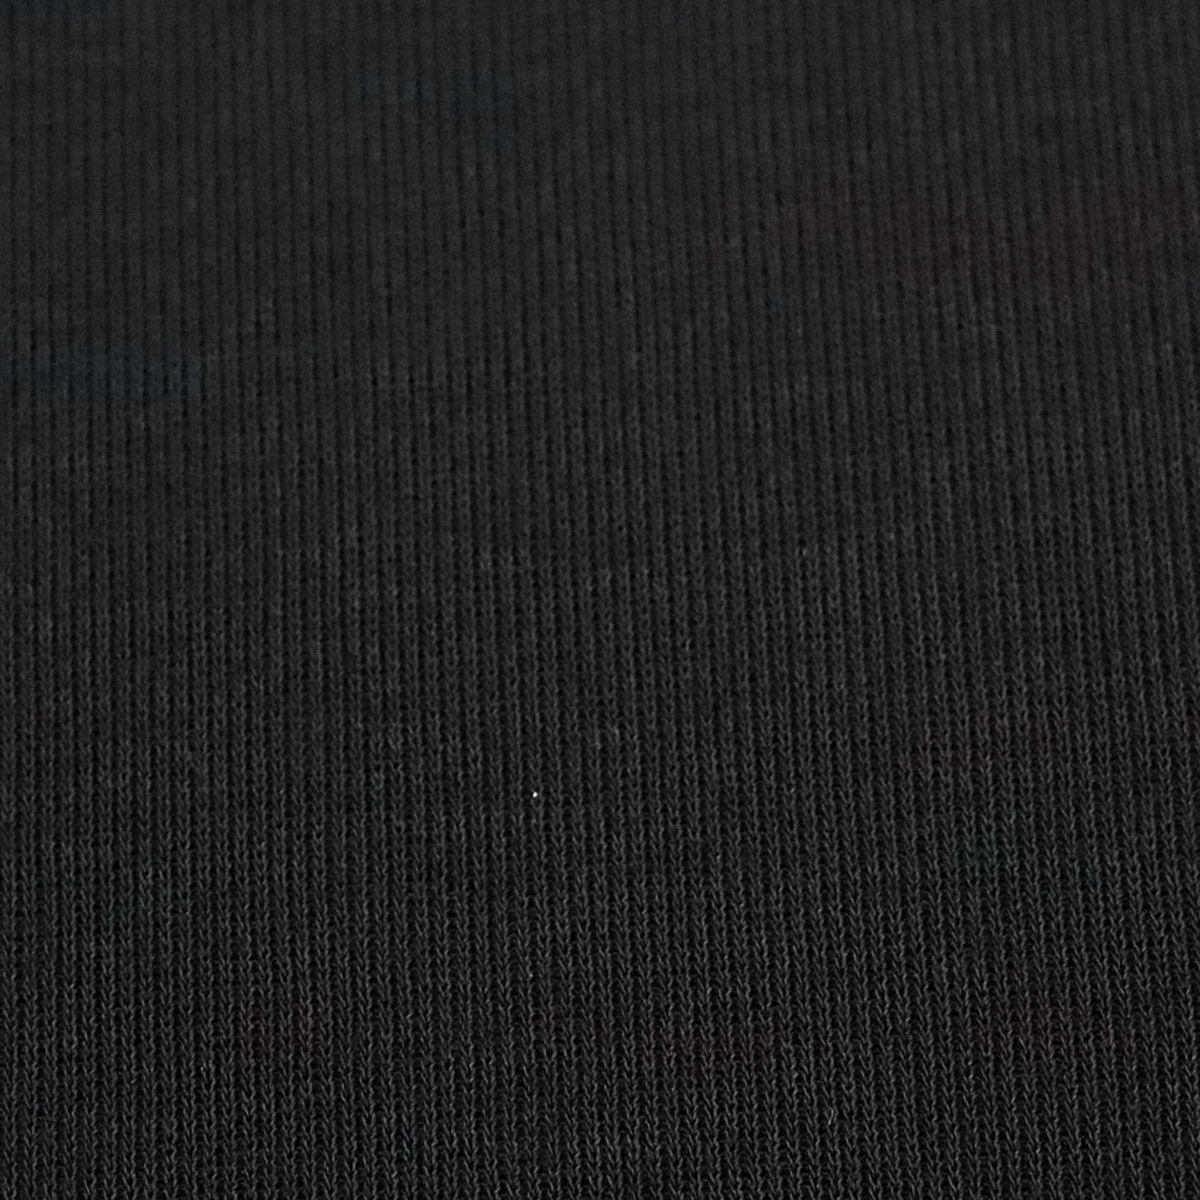 生地 ニット 綿100% 布地 くろ 黒 ブラック クロ 無地 収縮性 パジャマ カットソー トップス 薄手 うすい 布地 ハンドクラフト 縫製 洋裁